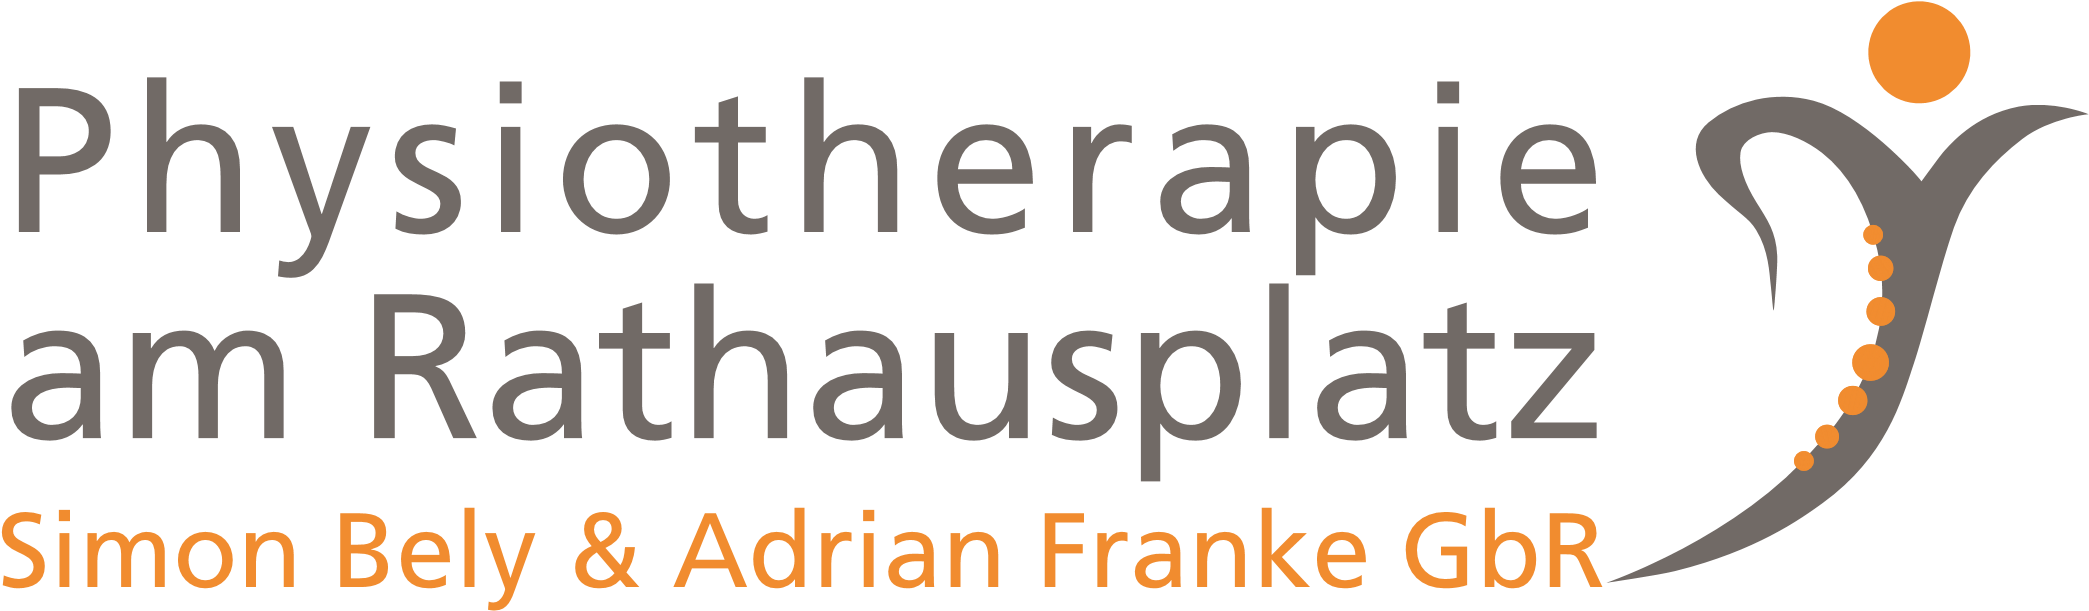 Physiotherapie am Rathausplatz | Ihre Physiotherapie in Schmelz Logo